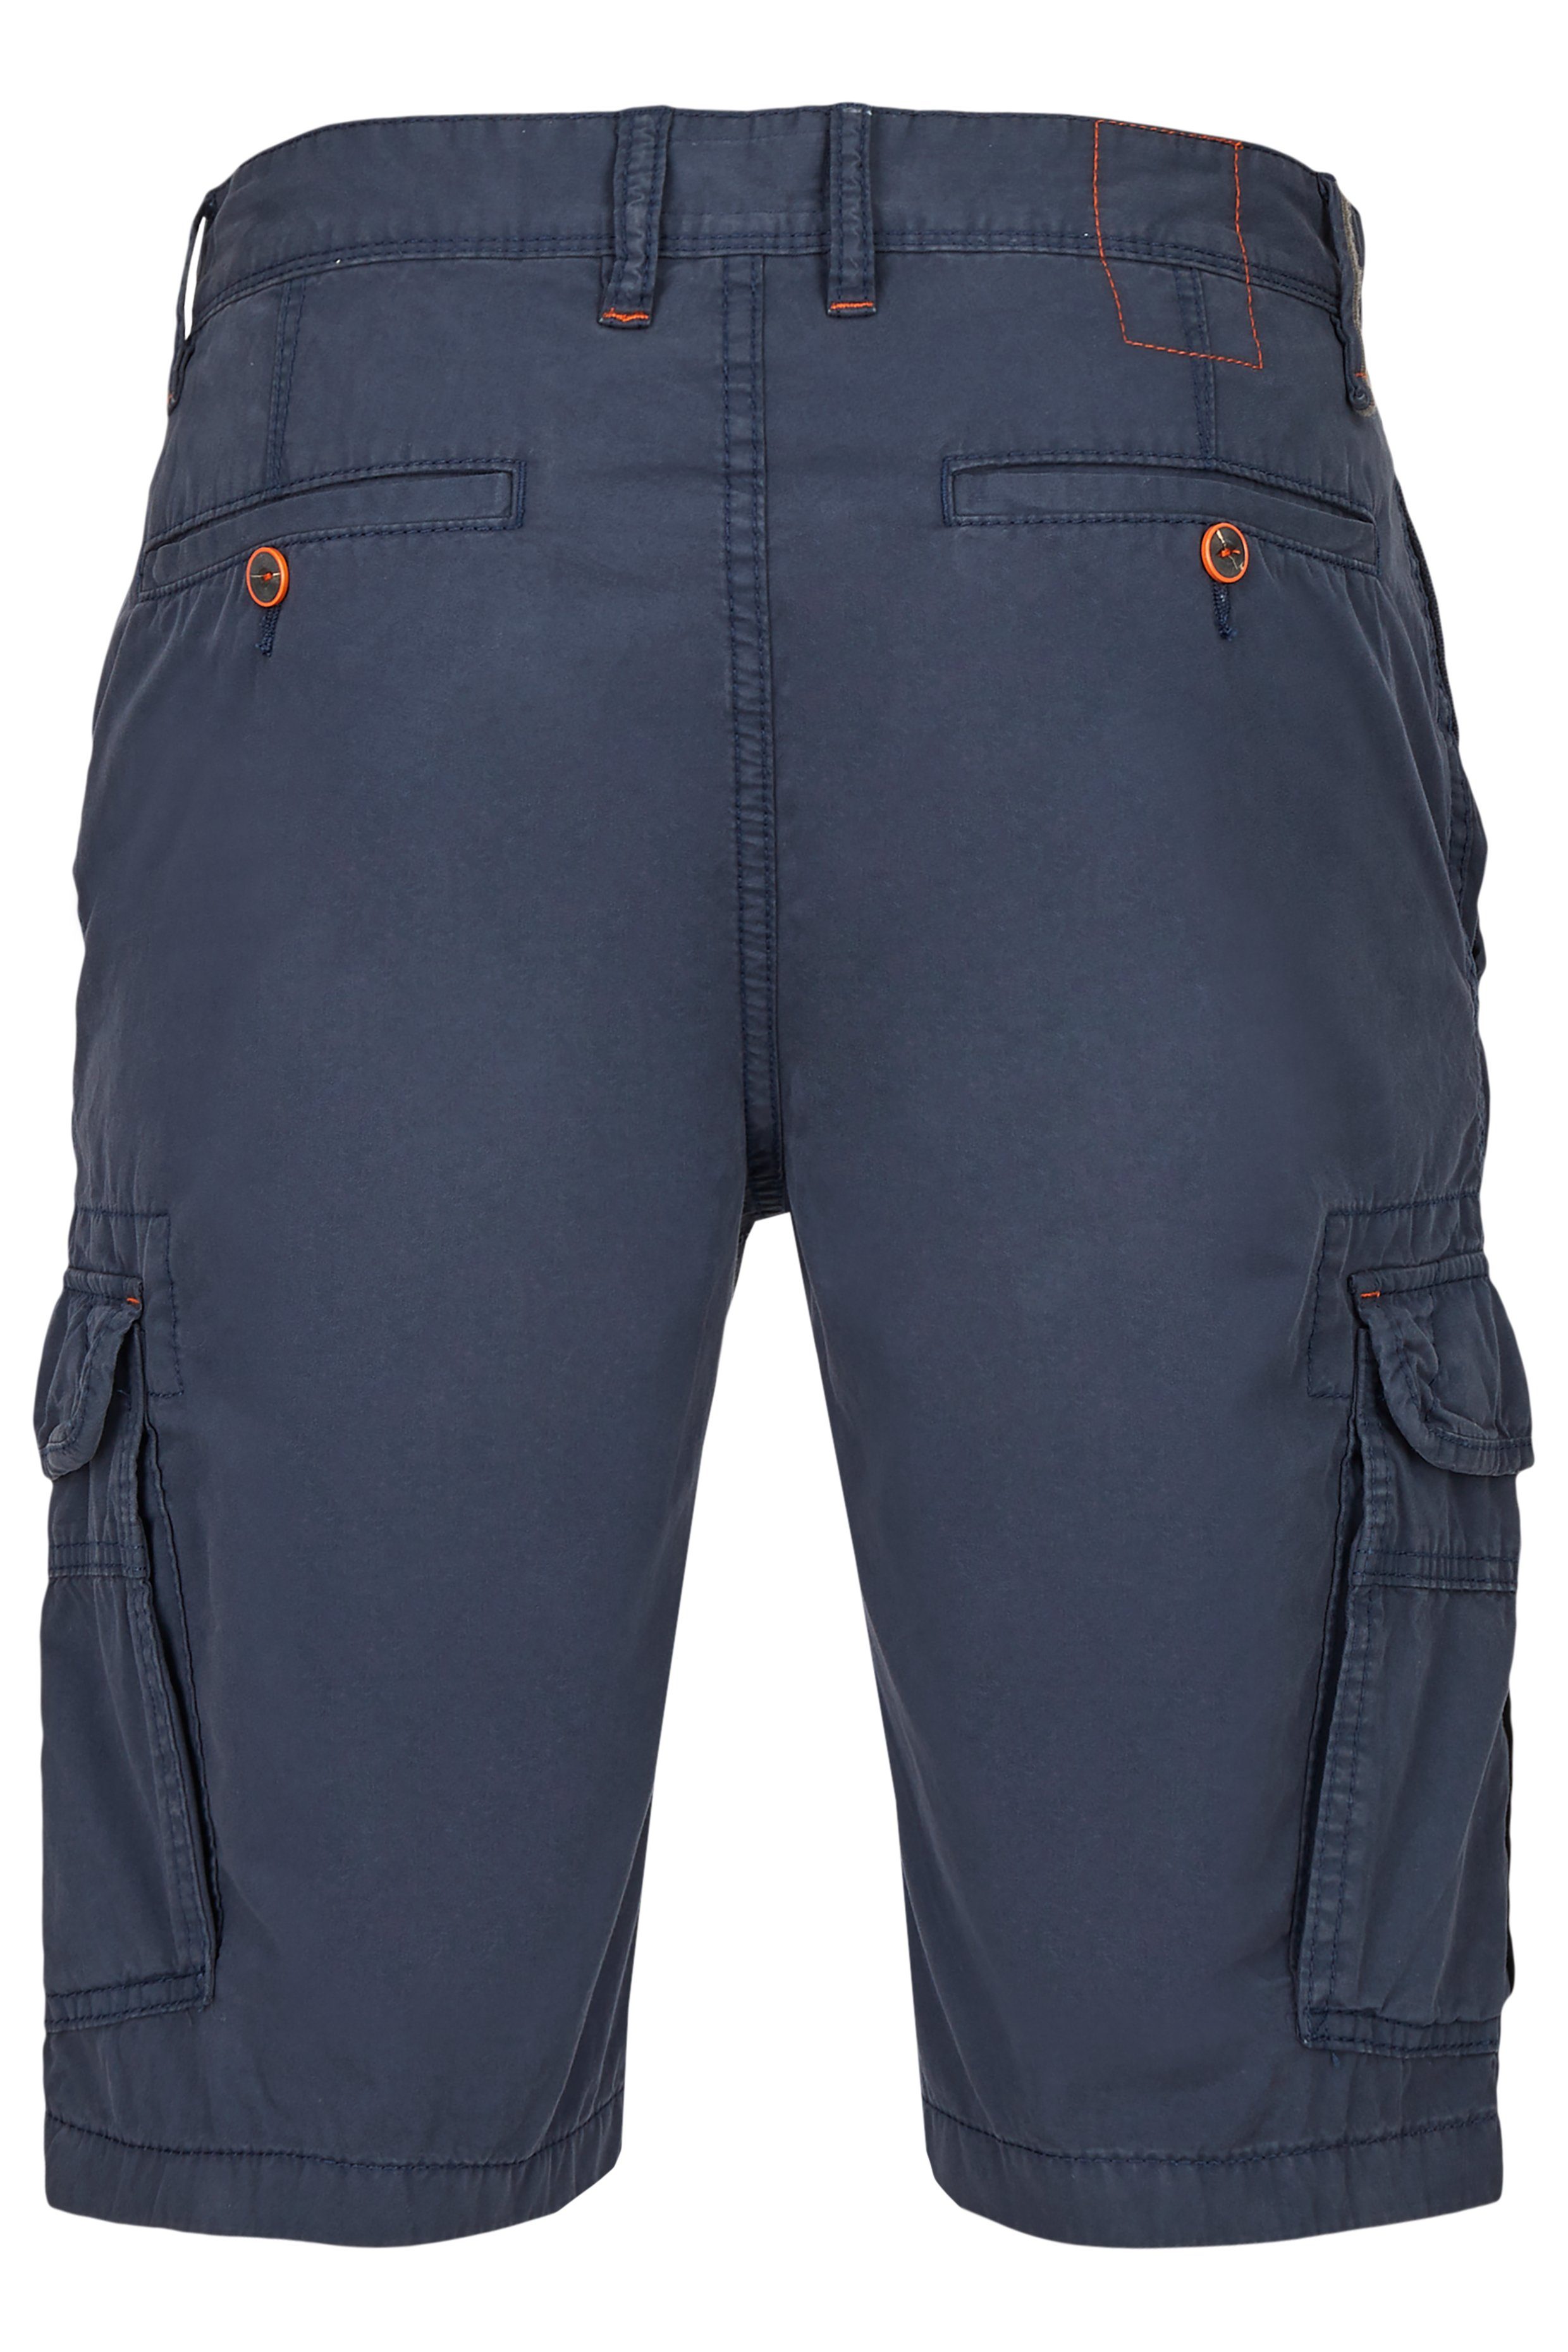 Hattric CARGO navy 5Q89.43 BERMUDA 696530 5-Pocket-Jeans HATTRIC